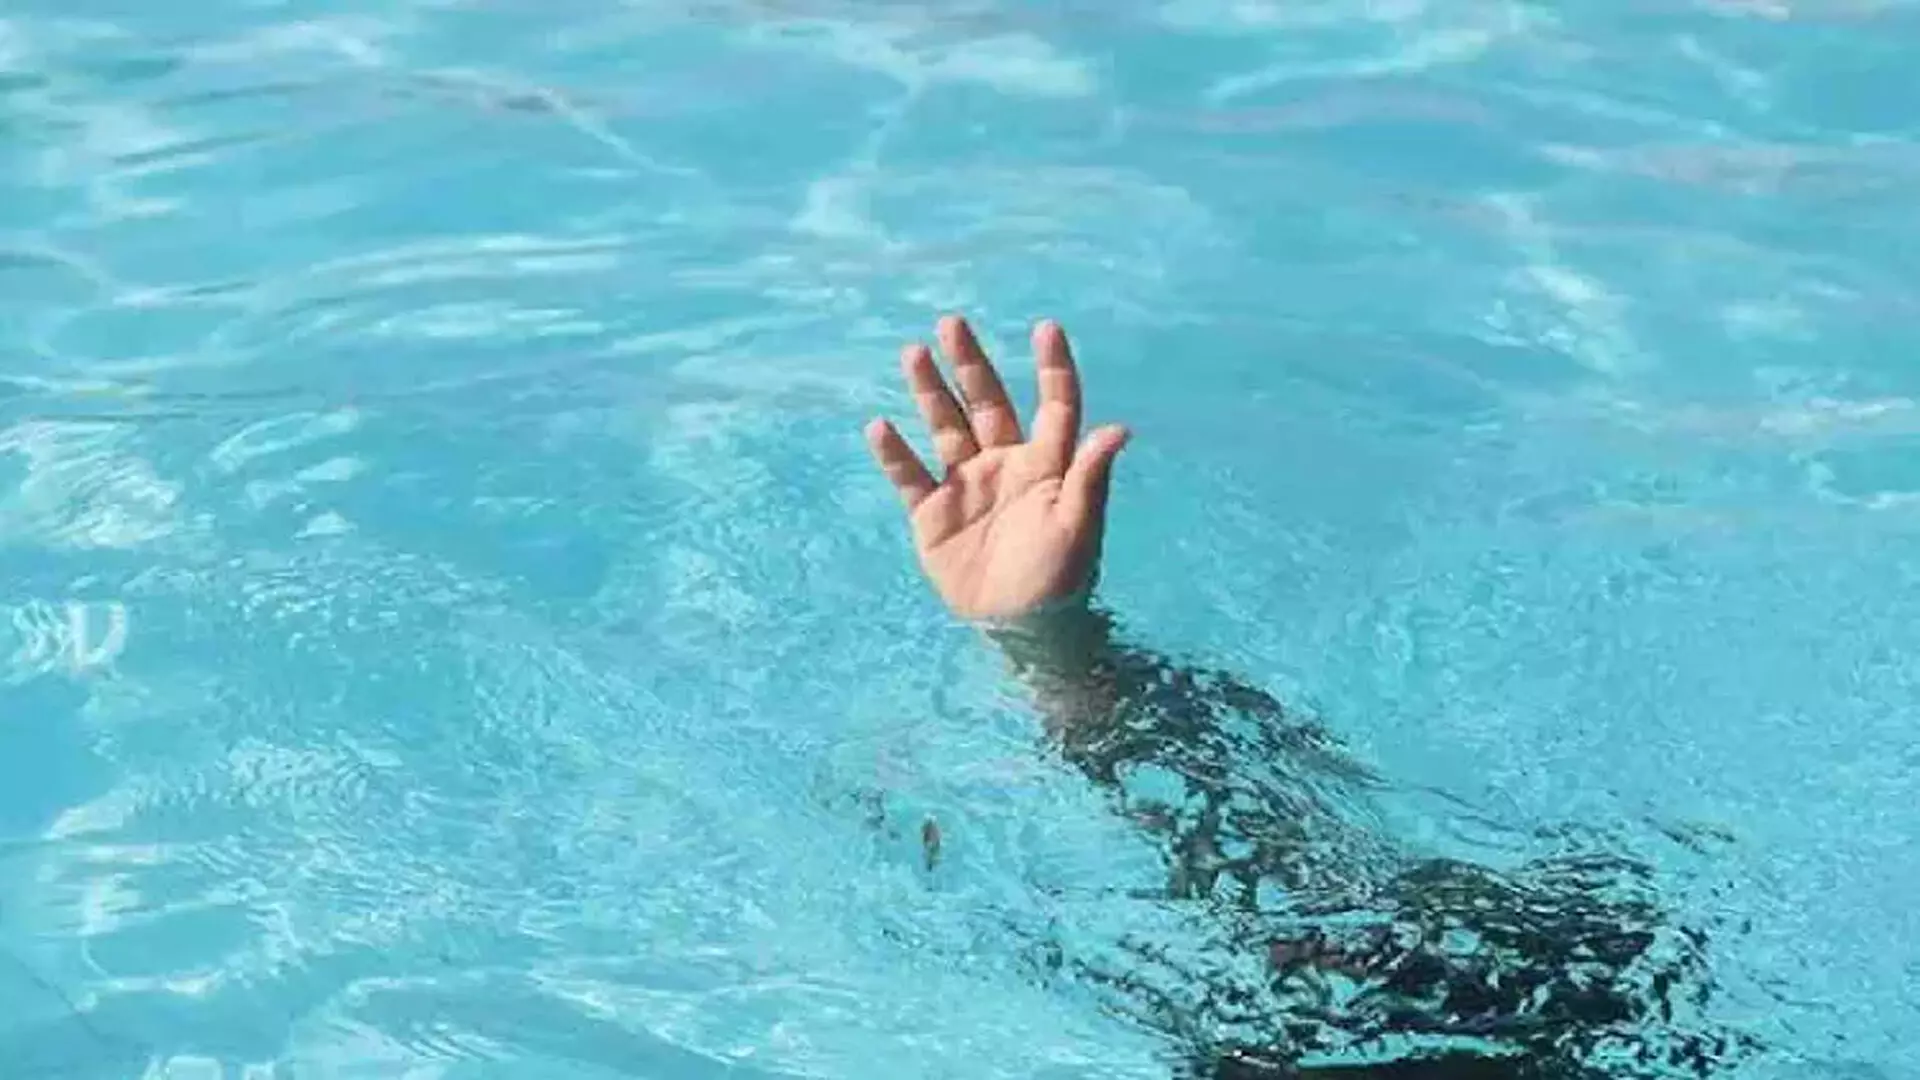 College छात्र की स्विमिंग पूल में डूबकर मौत, परिवार में कोहराम